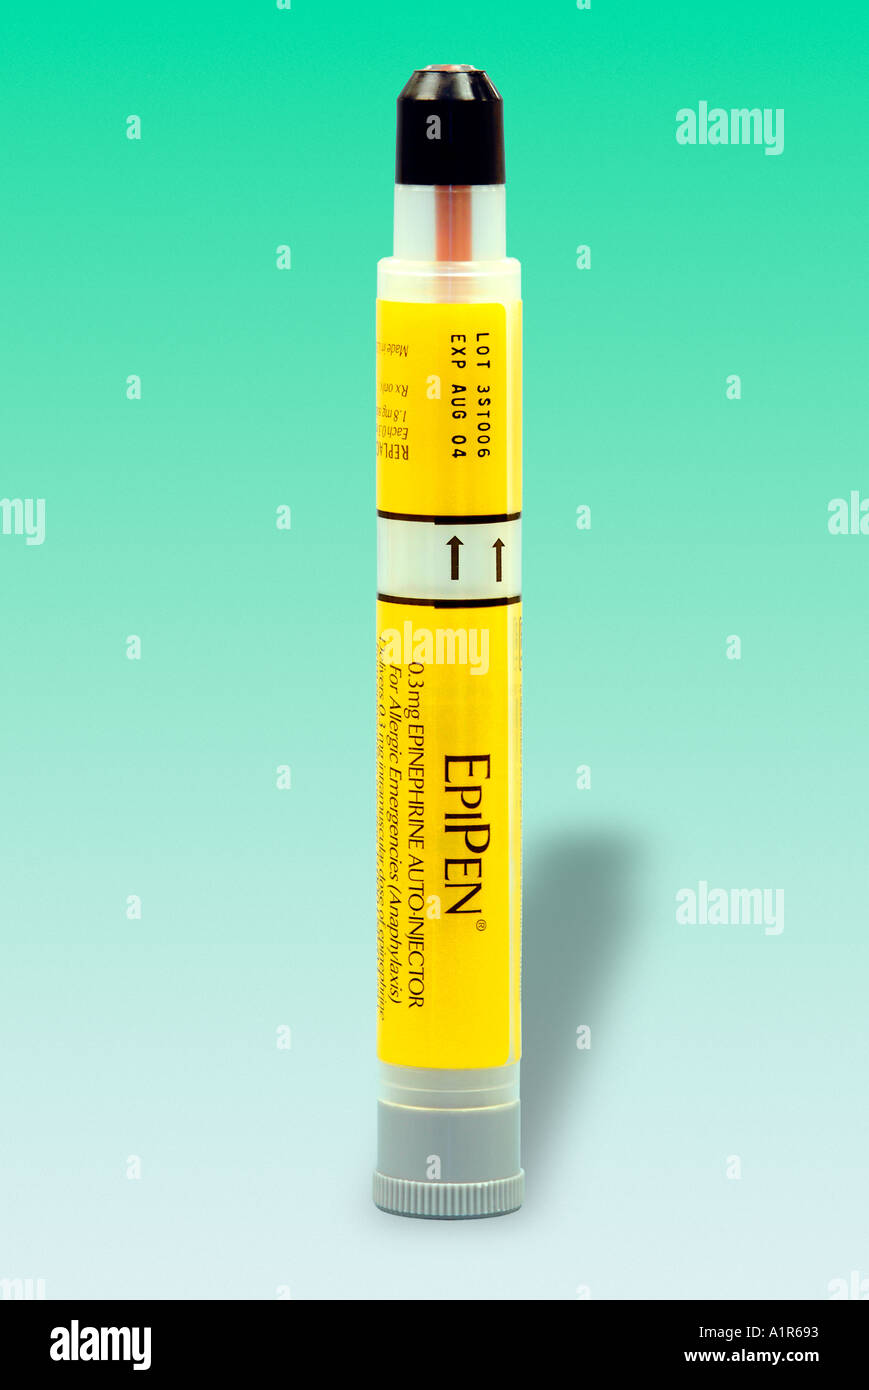 EpiPen - per trattare anafilassi, una grave reazione allergica, con un'iniezione di adrenalina. Foto Stock